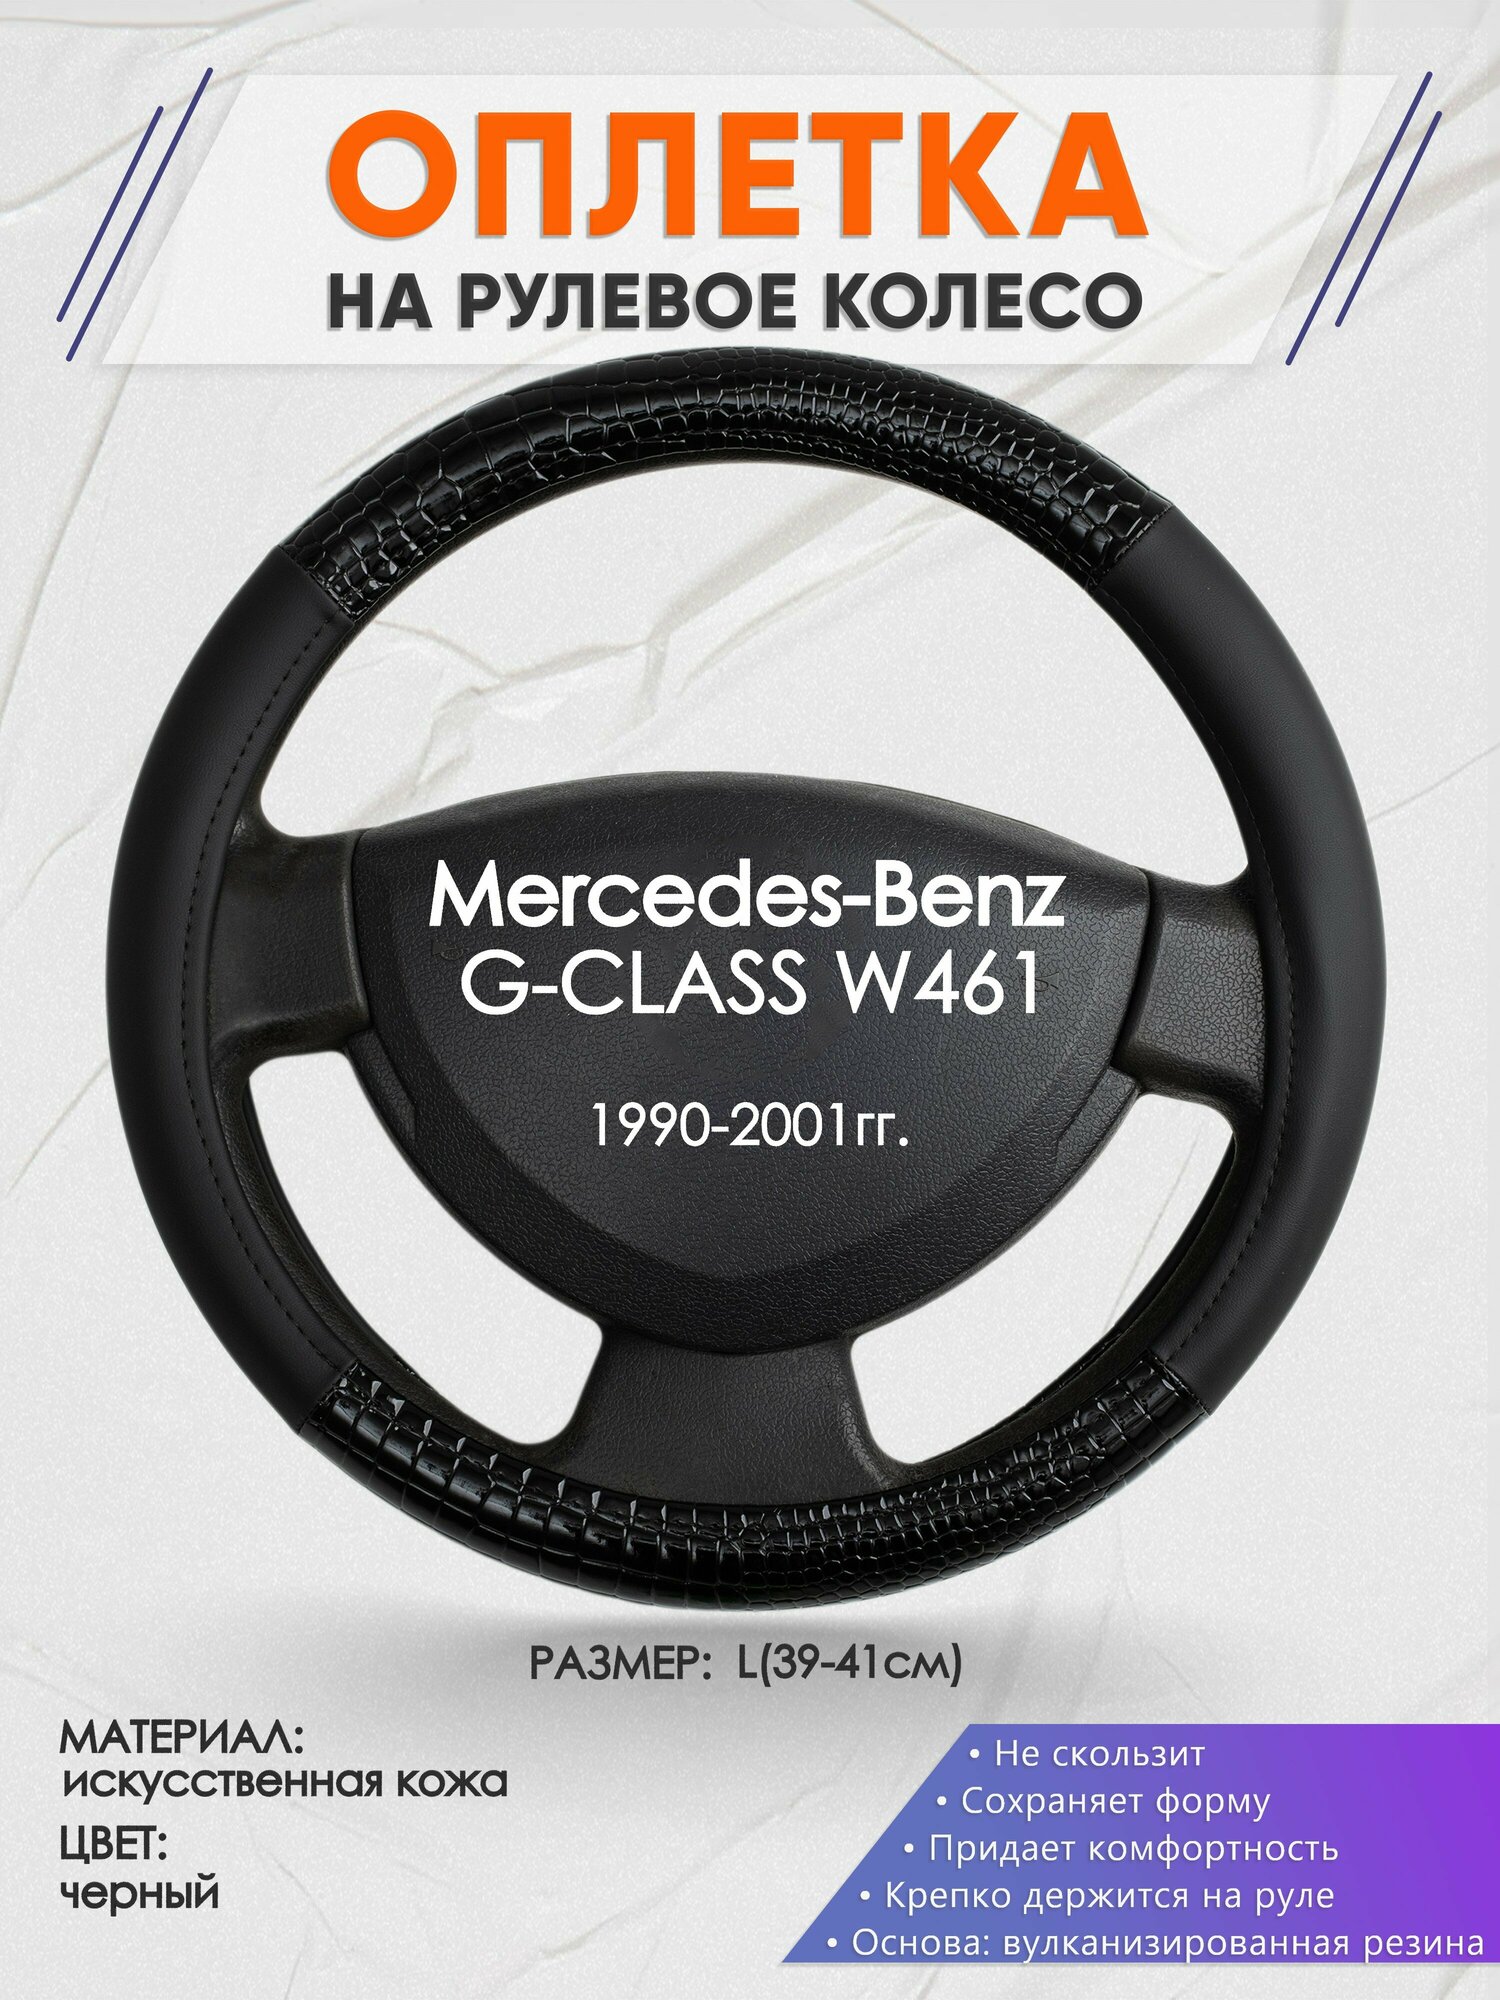 Оплетка на руль для Mercedes-Benz G-CLASS W461(Мерседес Бенц Г Класс) 1990-2001, L(39-41см), Искусственная кожа 83